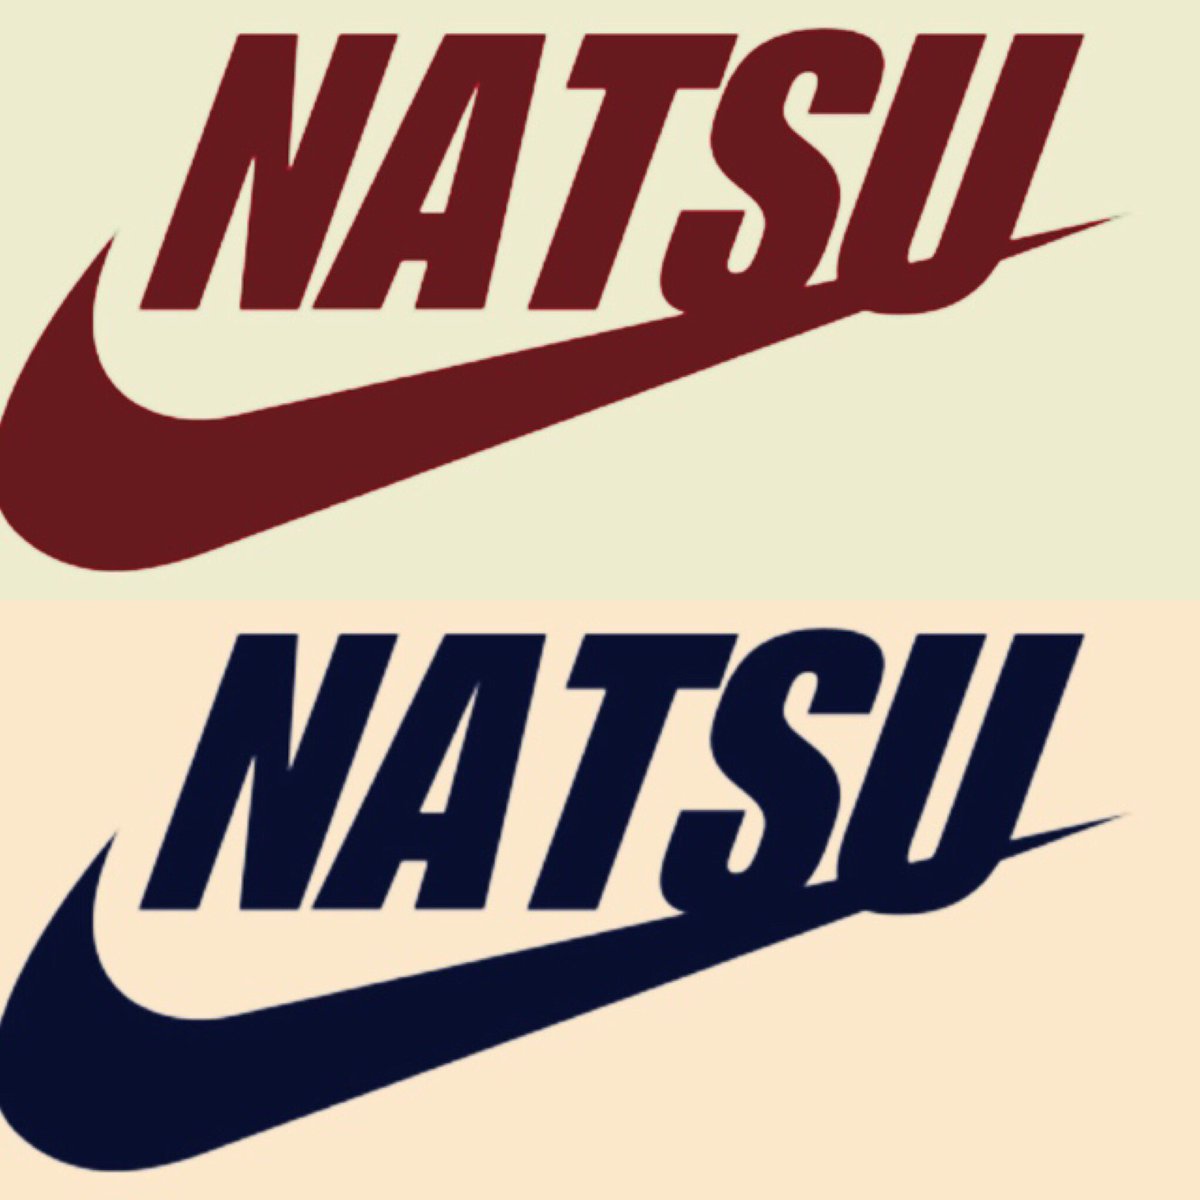 Natsu 画像加工 No Twitter 大人気 Nike 名前ロゴ 前回の名前ロゴが大人気だったので もう一度今日 土曜日 10月15日 限定 で Nike 名前ロゴのもっともっと オシャレな加工バージョンを お作りしたいと思いまーす 欲しい人rt 欲しい人dm